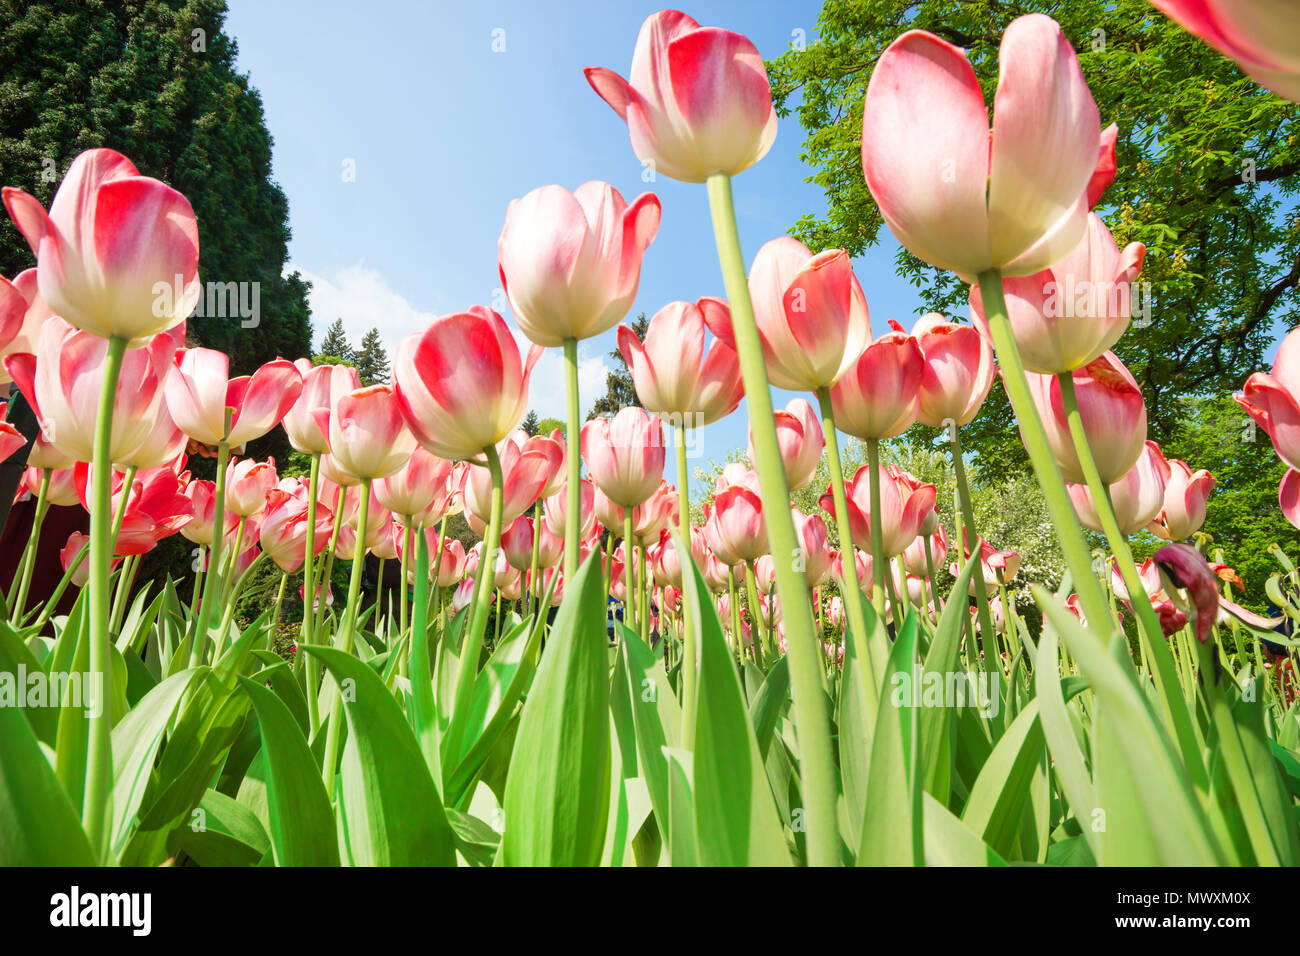 Frühling Blumen, Tulpen Blumen in der Wiese Natur im Frühling Hintergrund, rosa Blumen, wunderschönen Blumenstrauß aus Tulpen Natur Hintergrund. Selektive konzentrieren. Stockfoto